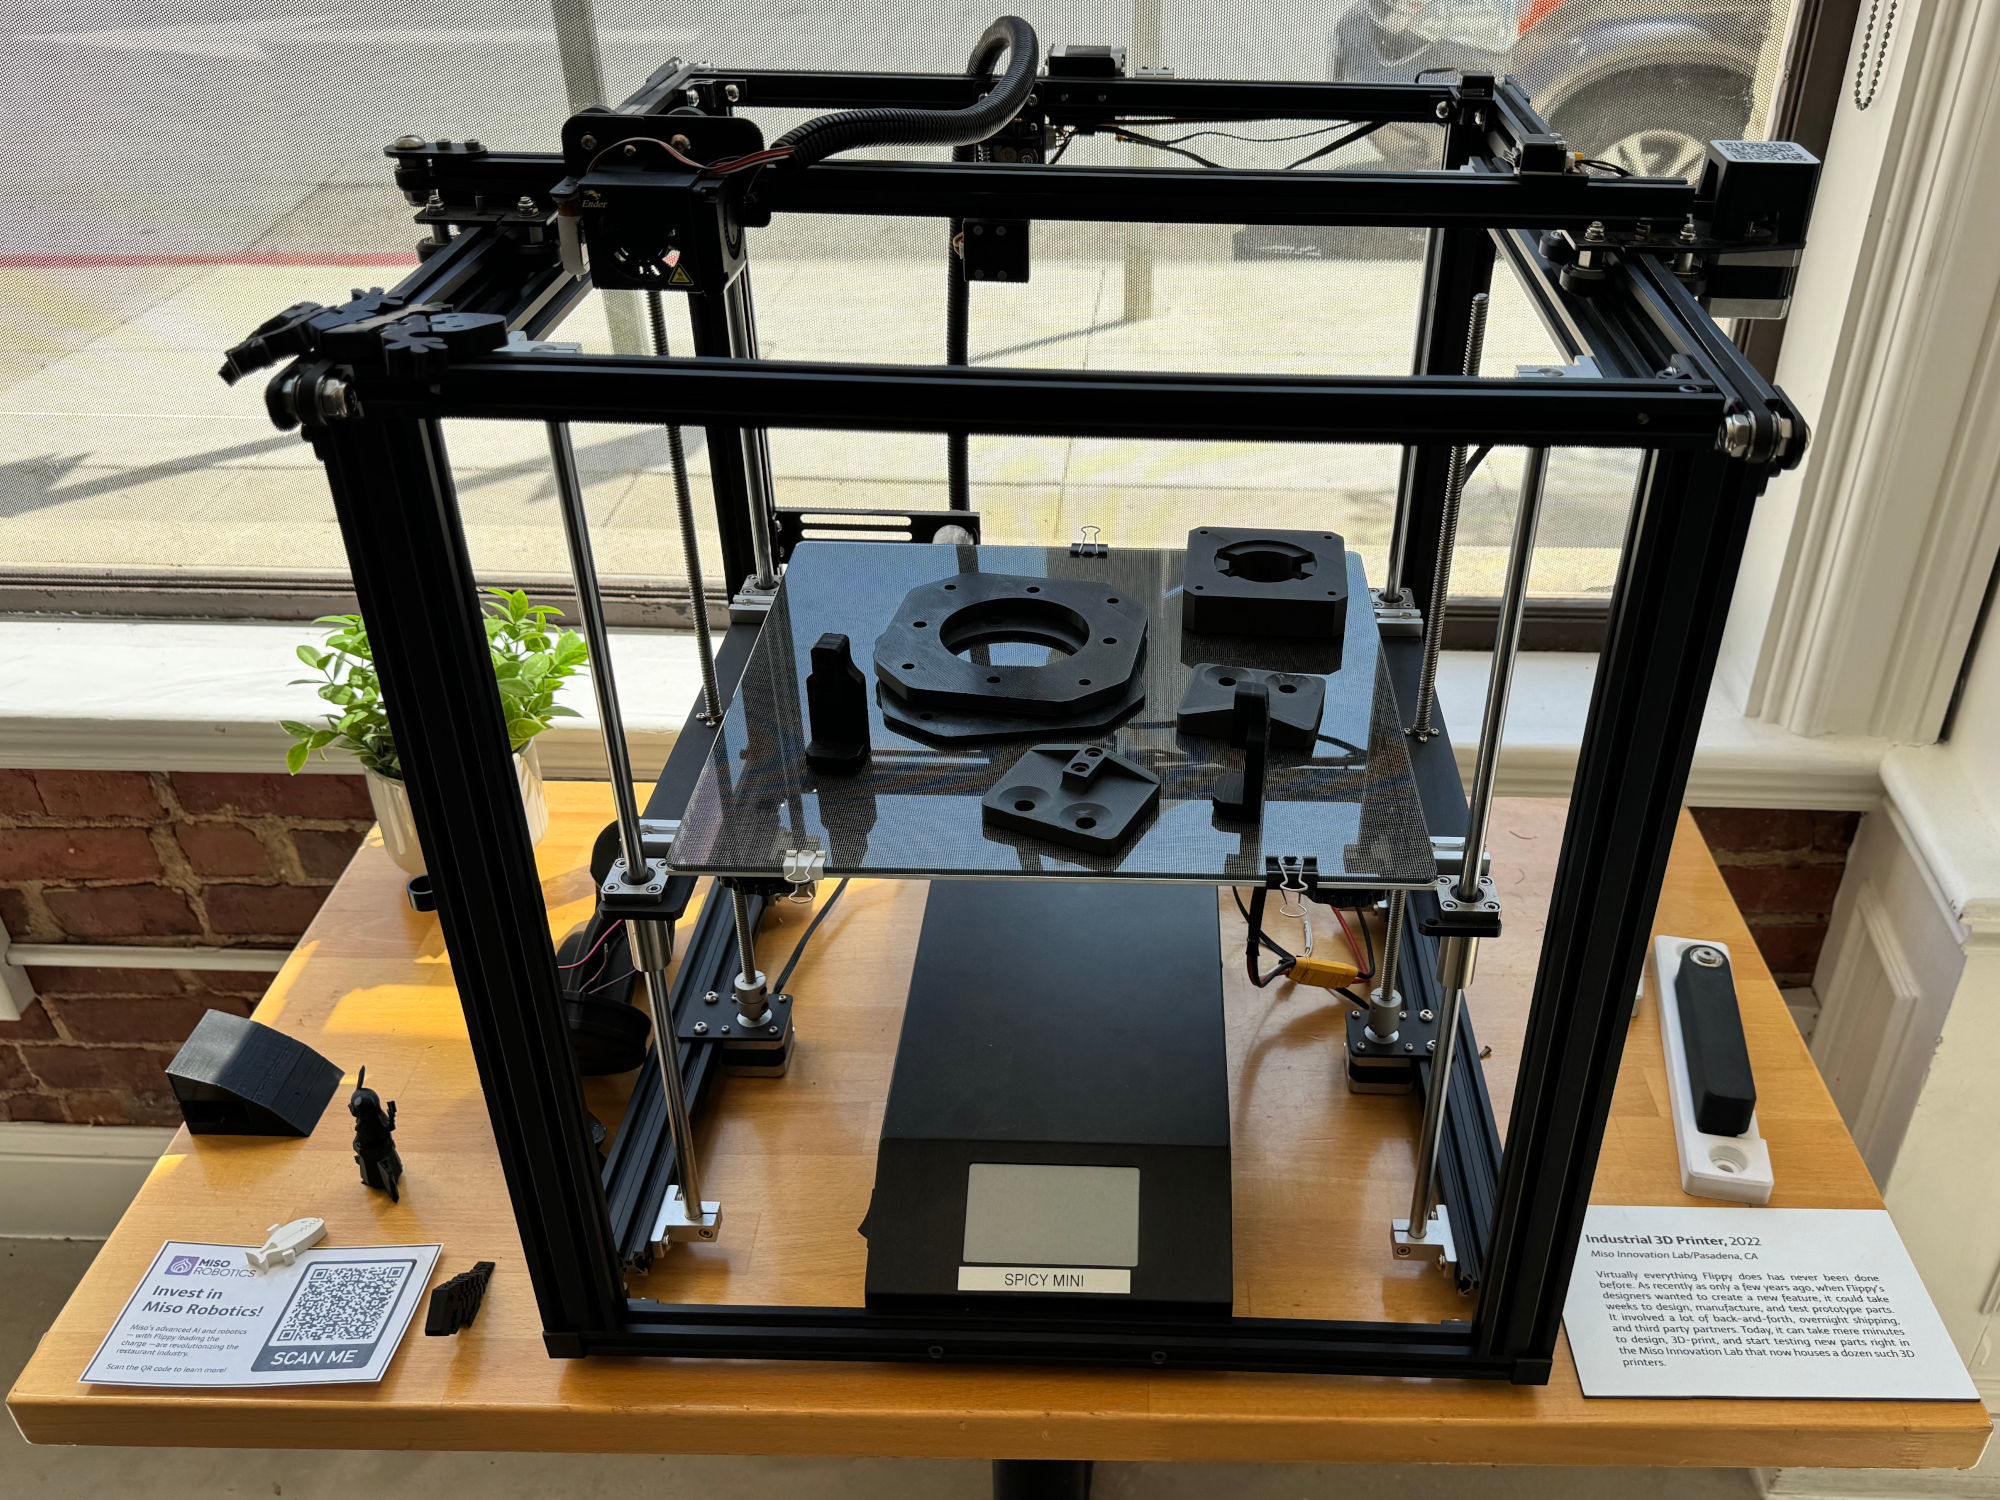 CaliExpress Industrial 3D Printer